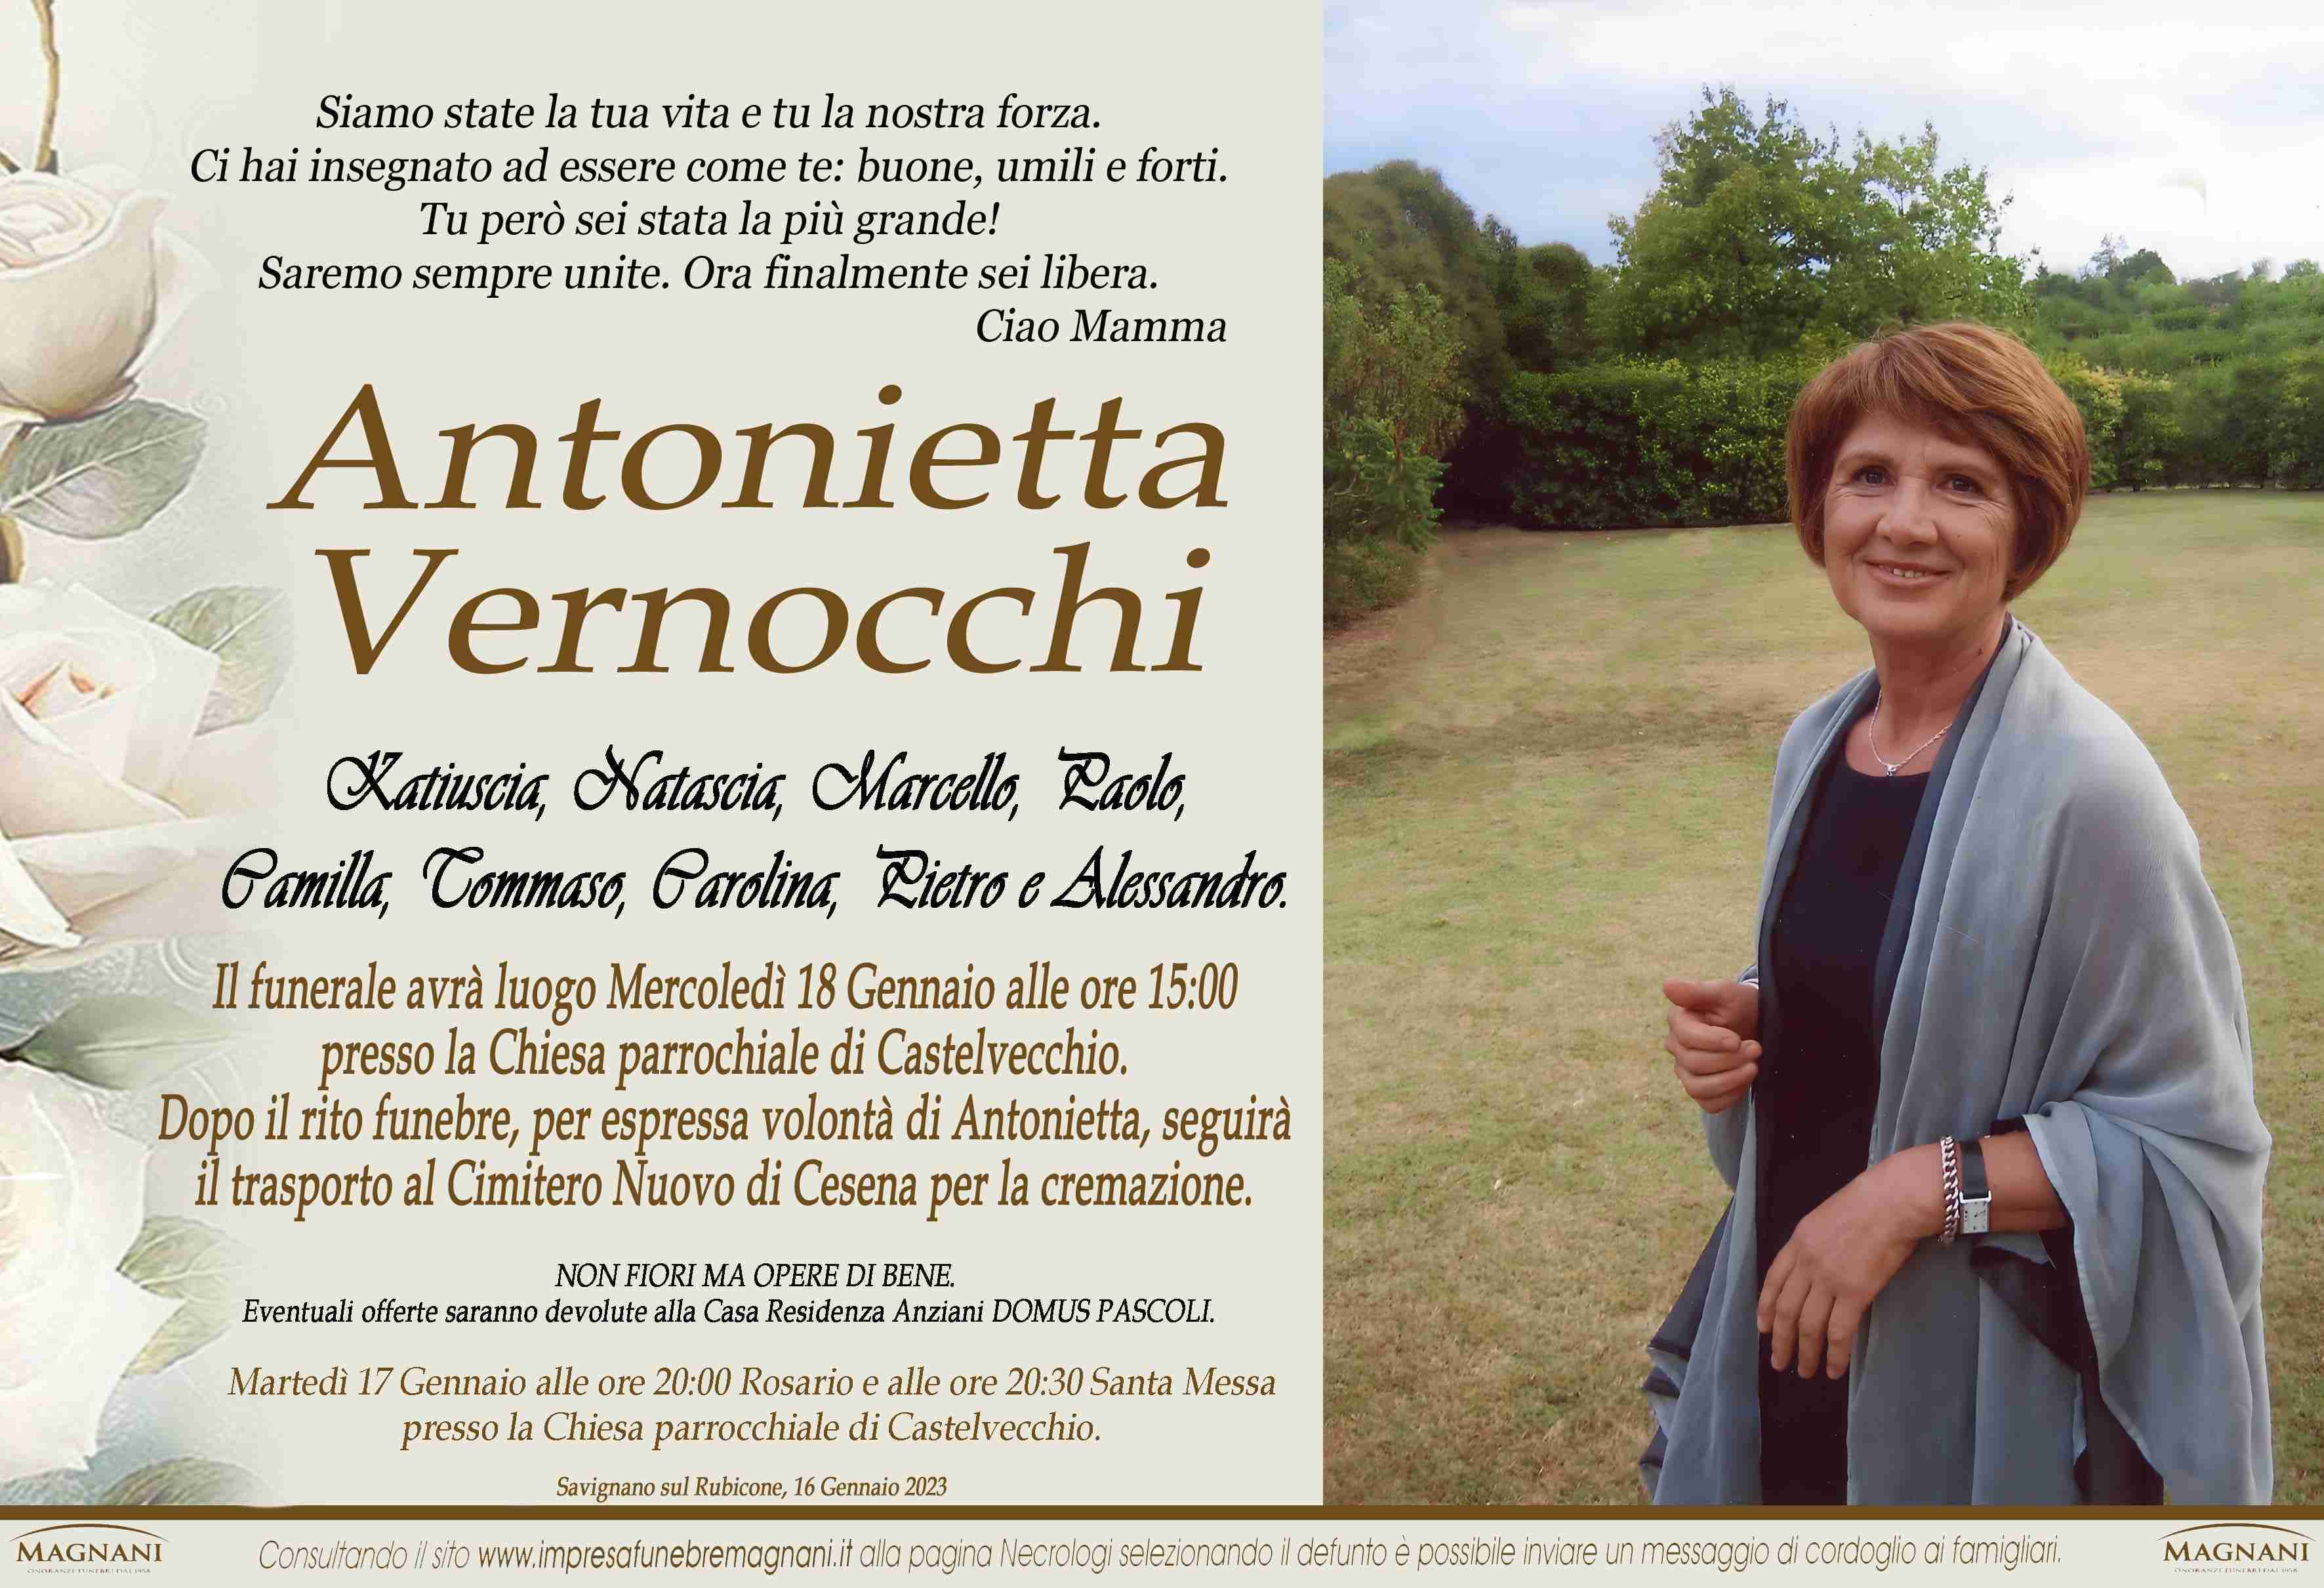 Antonietta Vernocchi